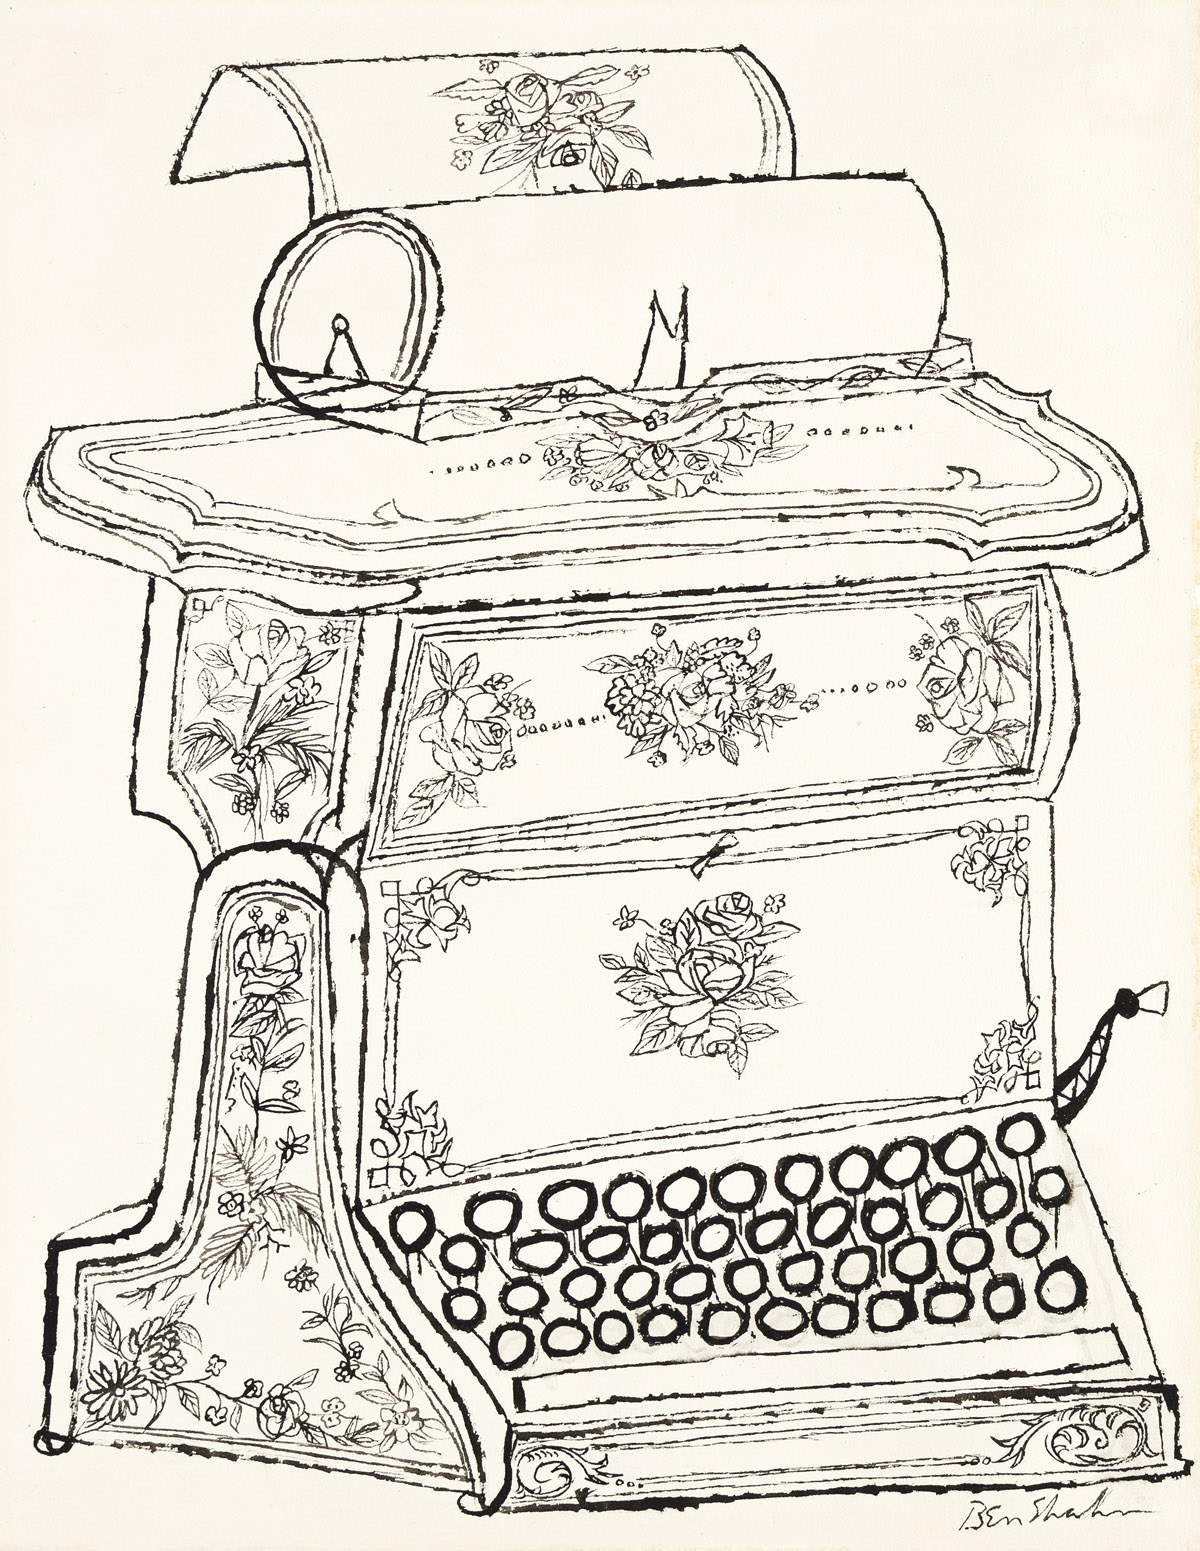 BEN SHAHN (1898-1969) Untitled (Sholes and Glidden Typewriter).